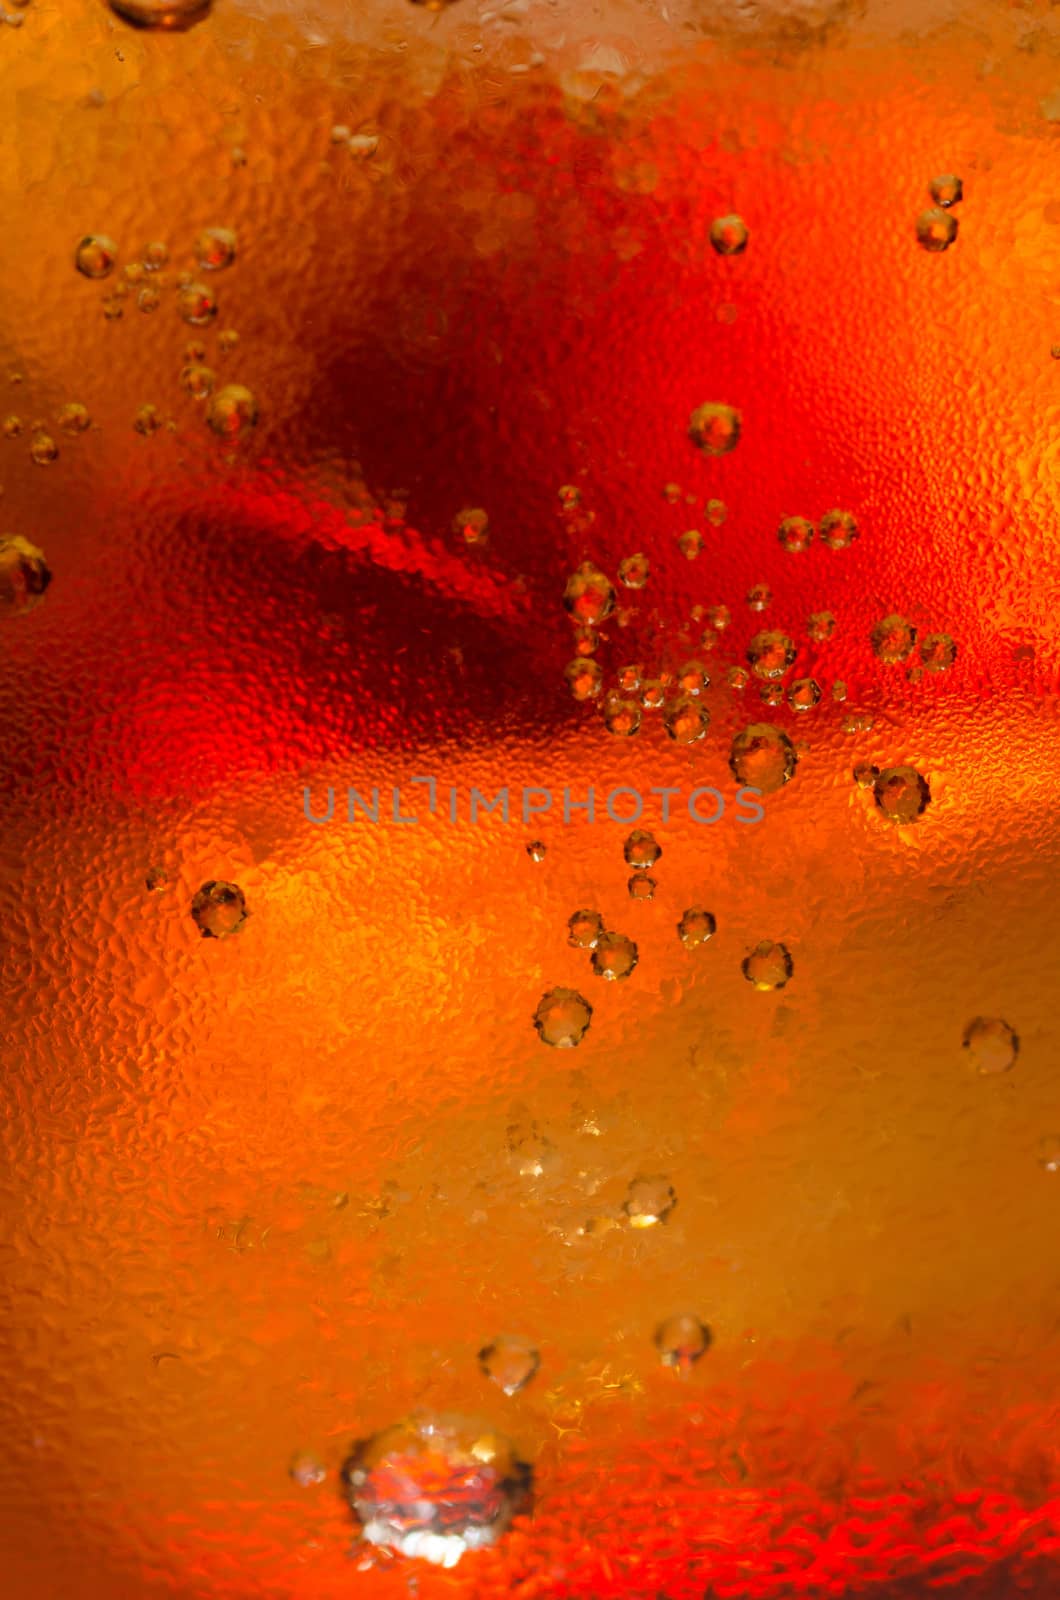 Coke and bubbles by hemeroskopion